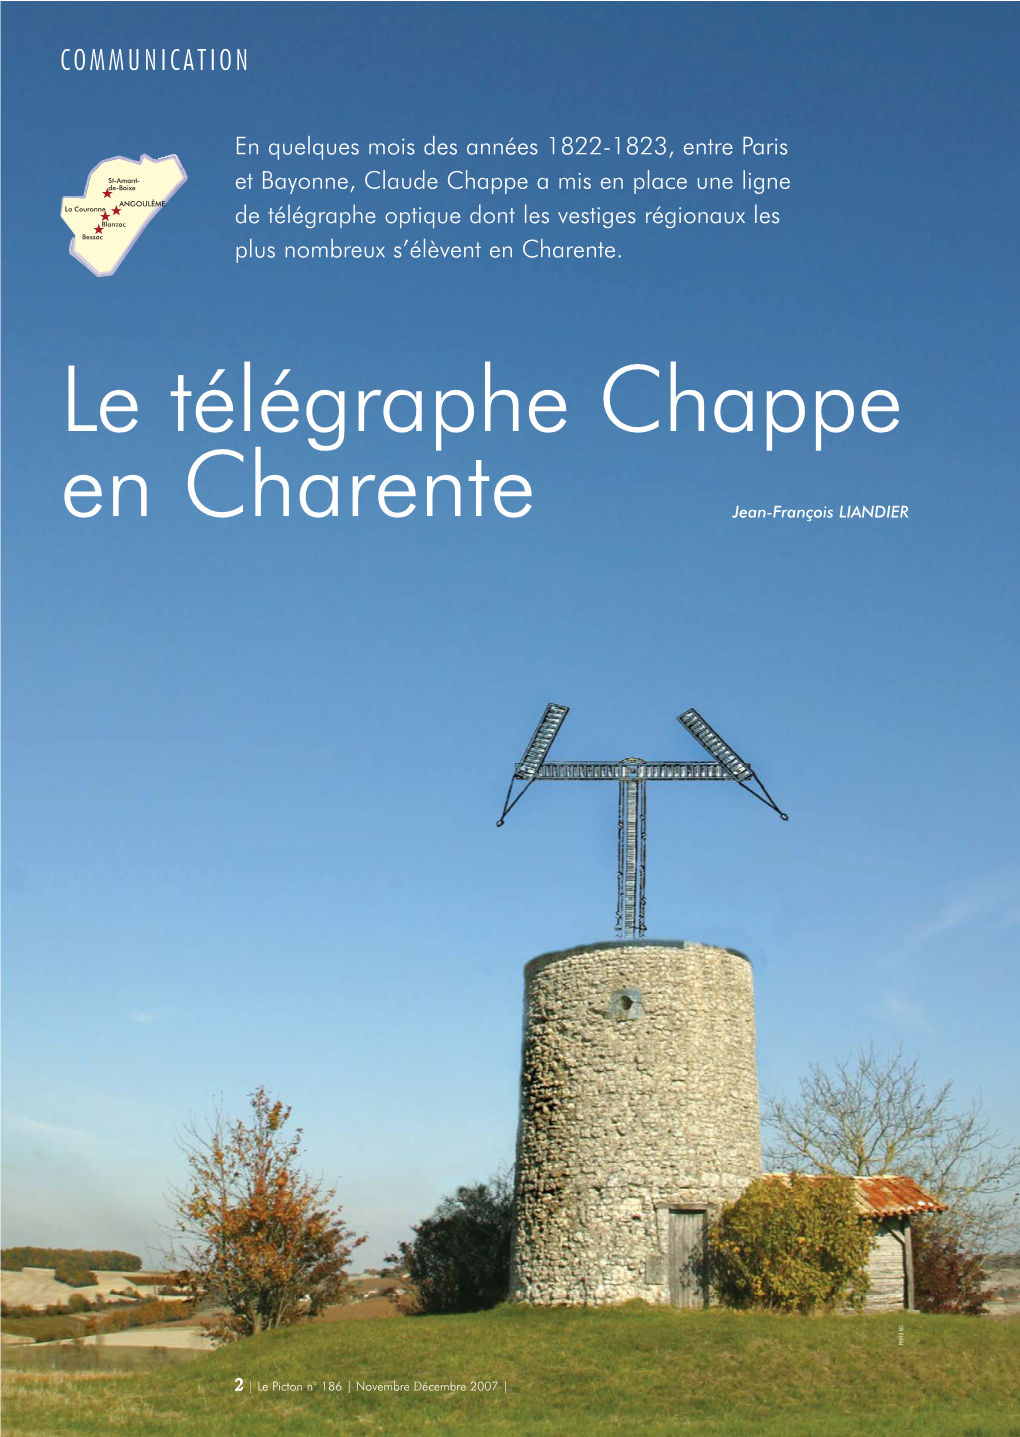 Le Télégraphe Chappe En Charente Jean-François LIANDIER PHOTO MG